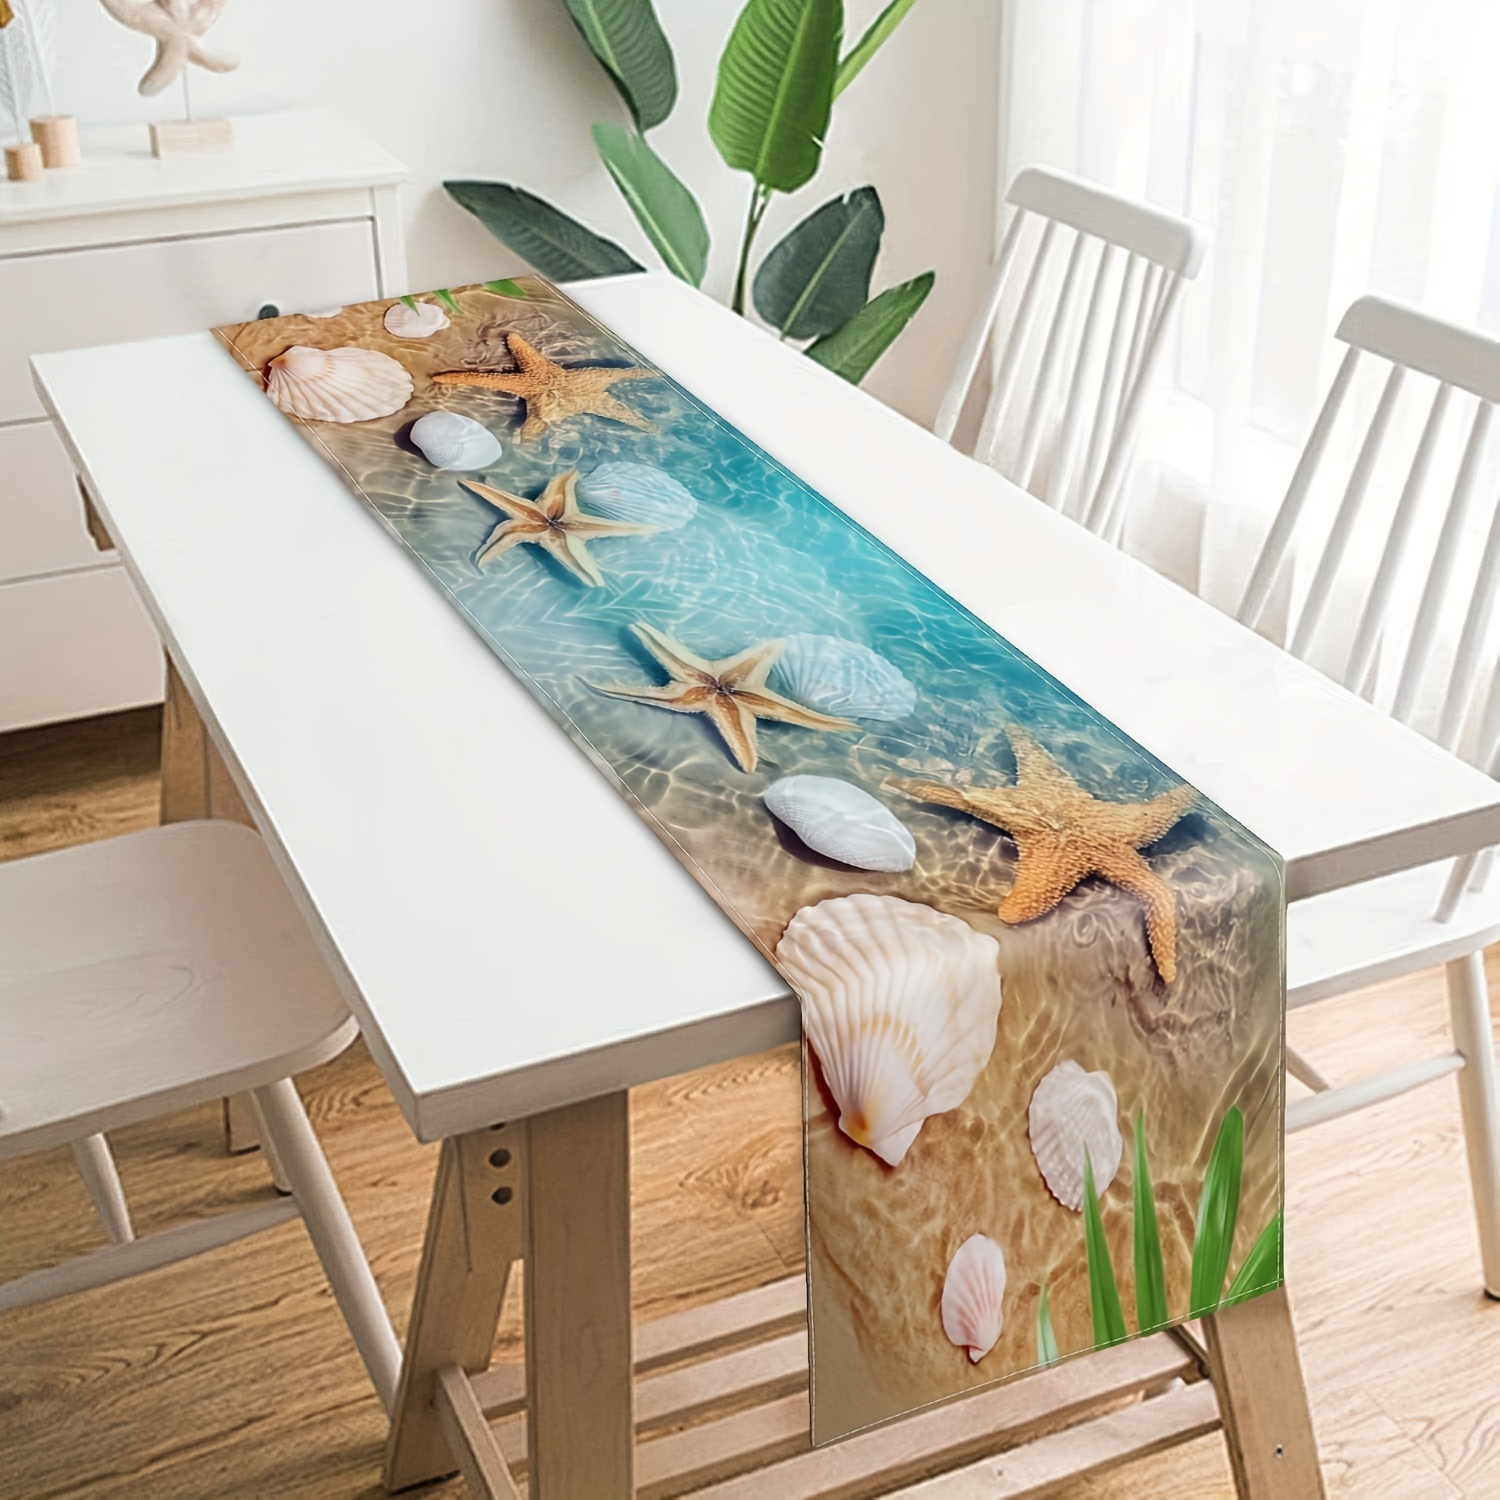 Caminos de mesa de verano pequeños de 13 x 36 pulgadas, diseño de conchas  marinas y estrellas de mar, manteles de madera rústica azul de lino de